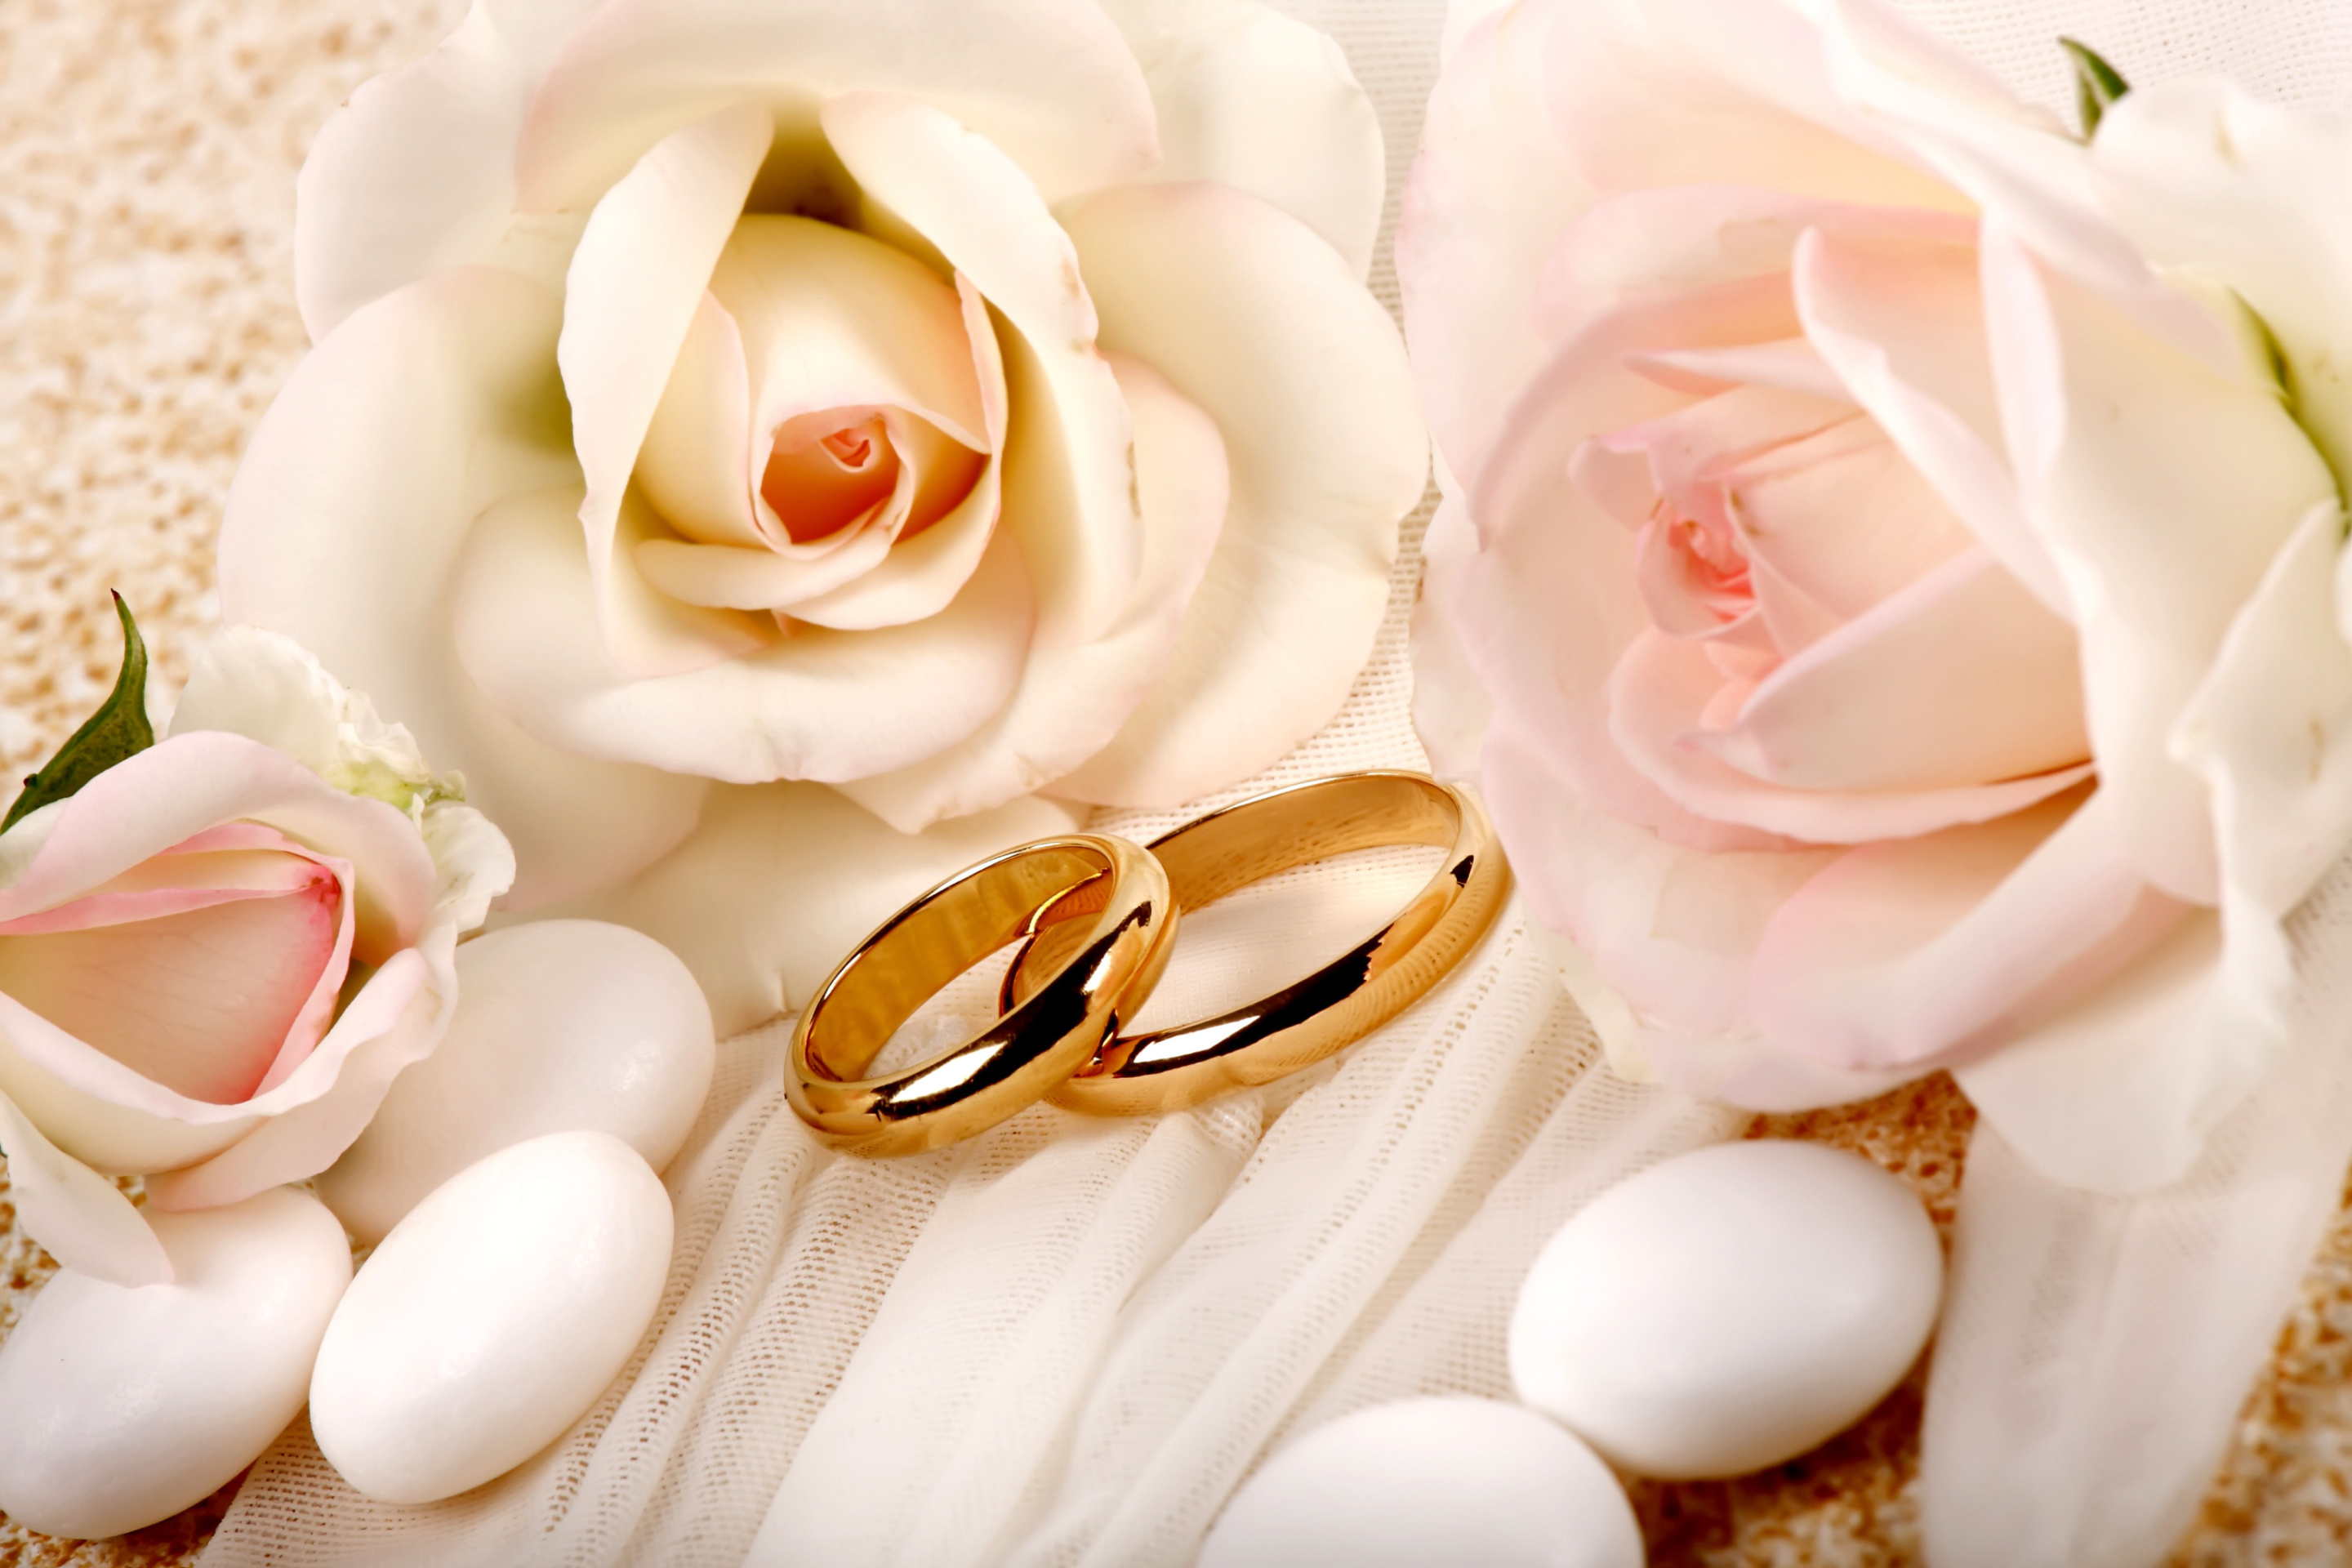 Обои Roses and Wedding Rings 2880x1920